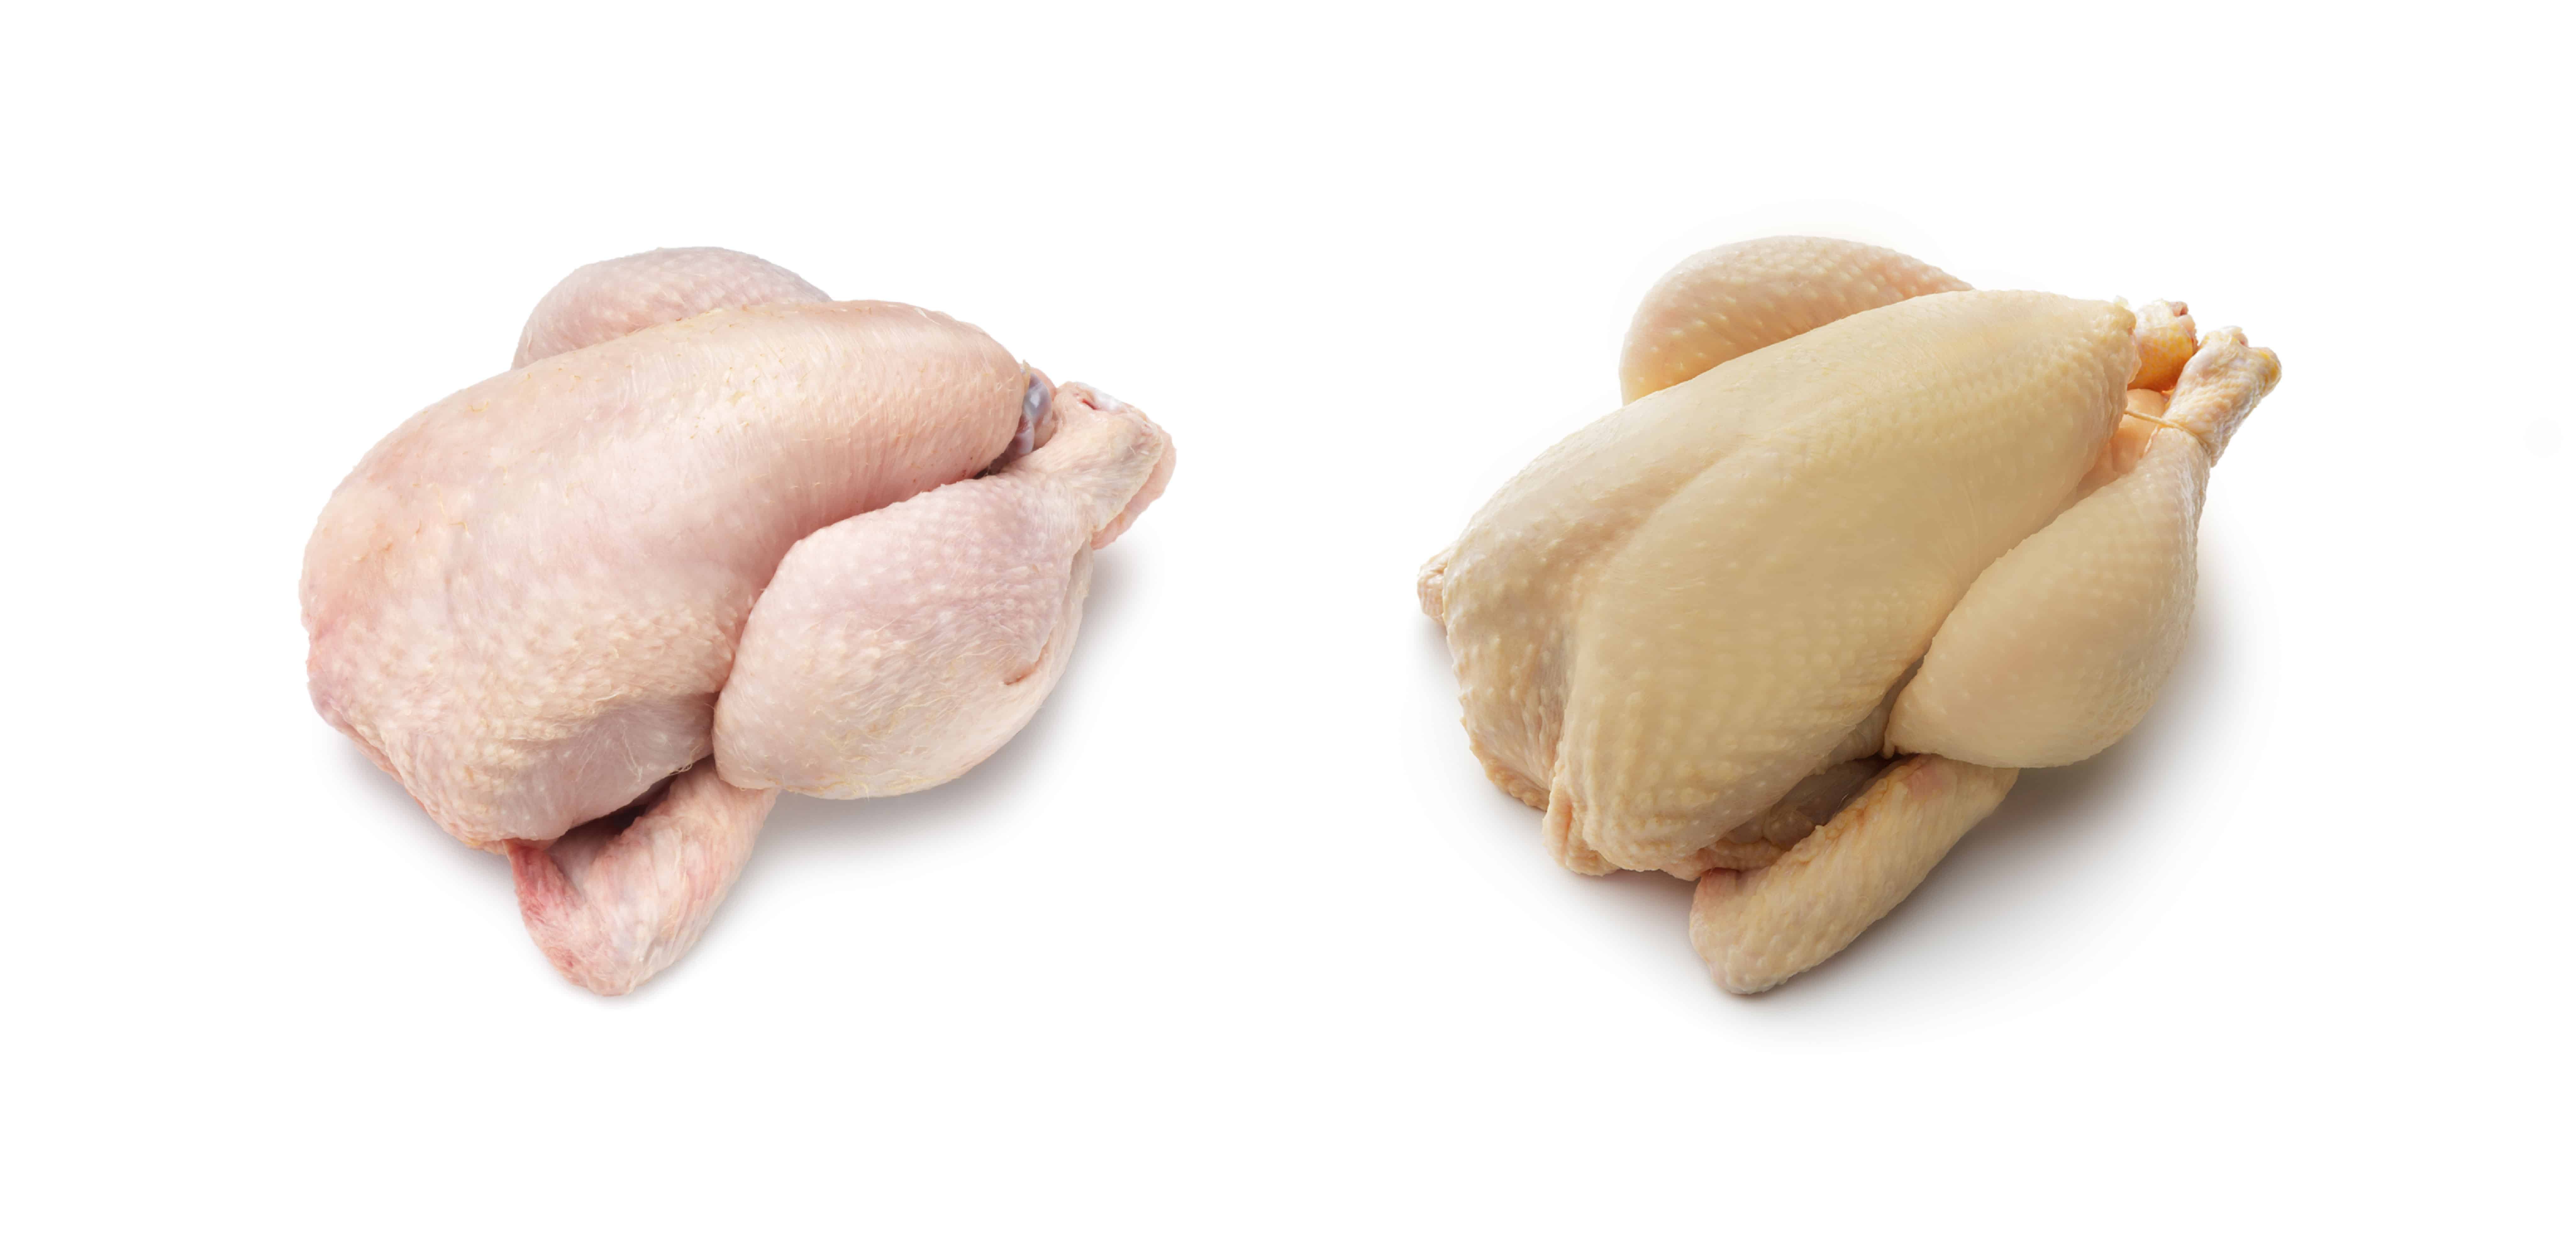 El pollo es saludable, blanco o amarillo — Bachoco® Contigo todos los días